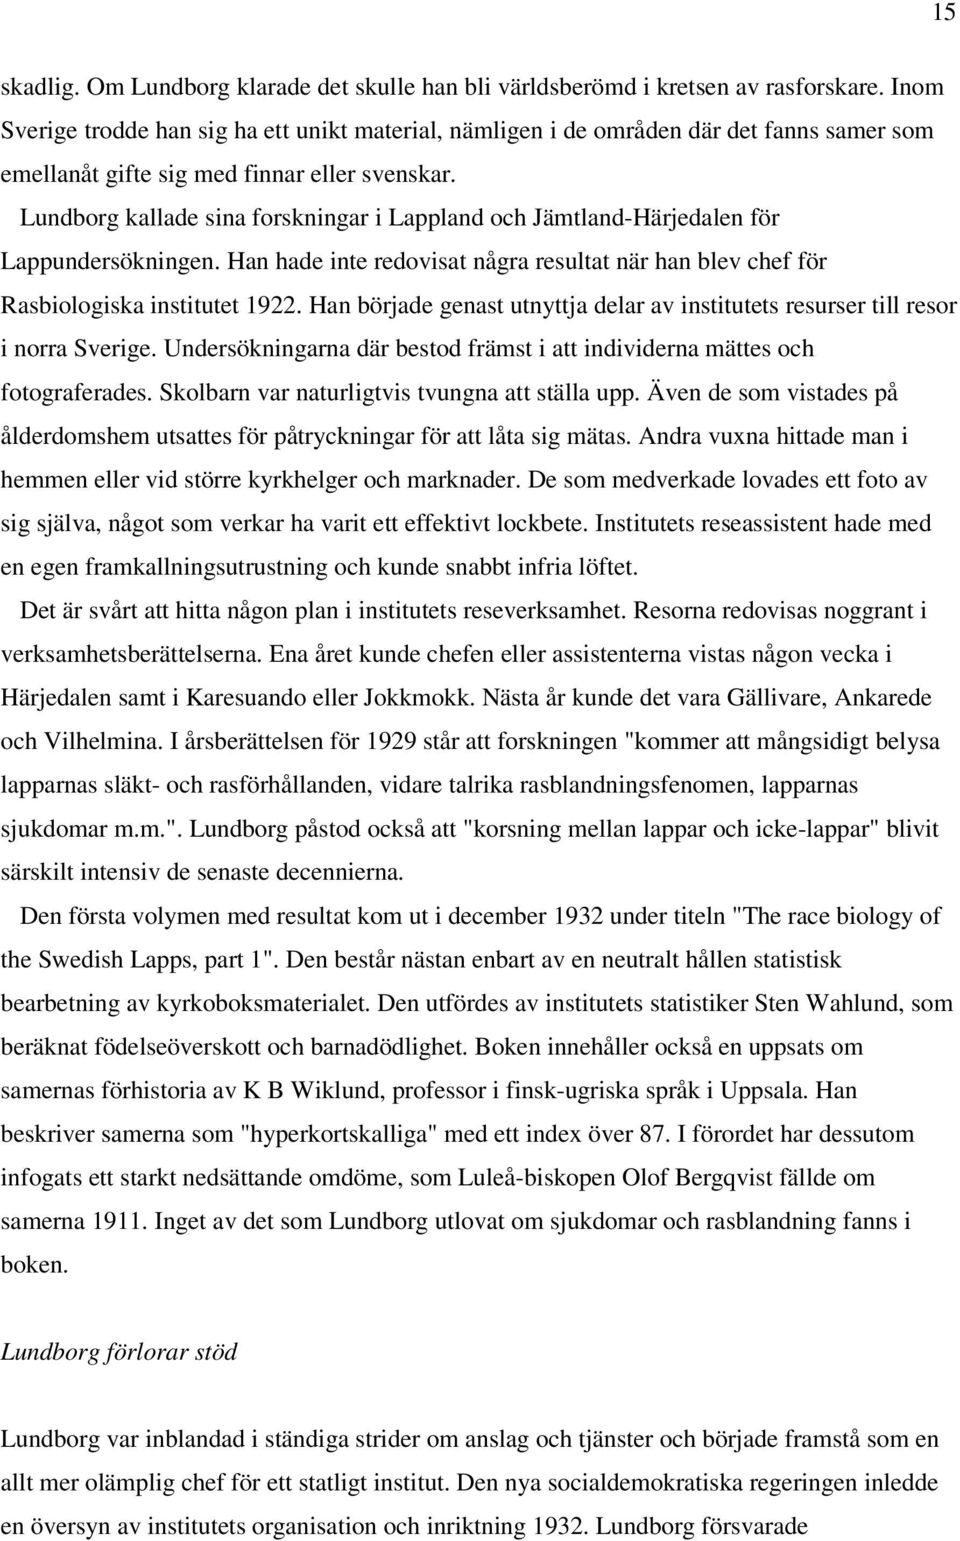 Lundborg kallade sina forskningar i Lappland och Jämtland-Härjedalen för Lappundersökningen. Han hade inte redovisat några resultat när han blev chef för Rasbiologiska institutet 1922.